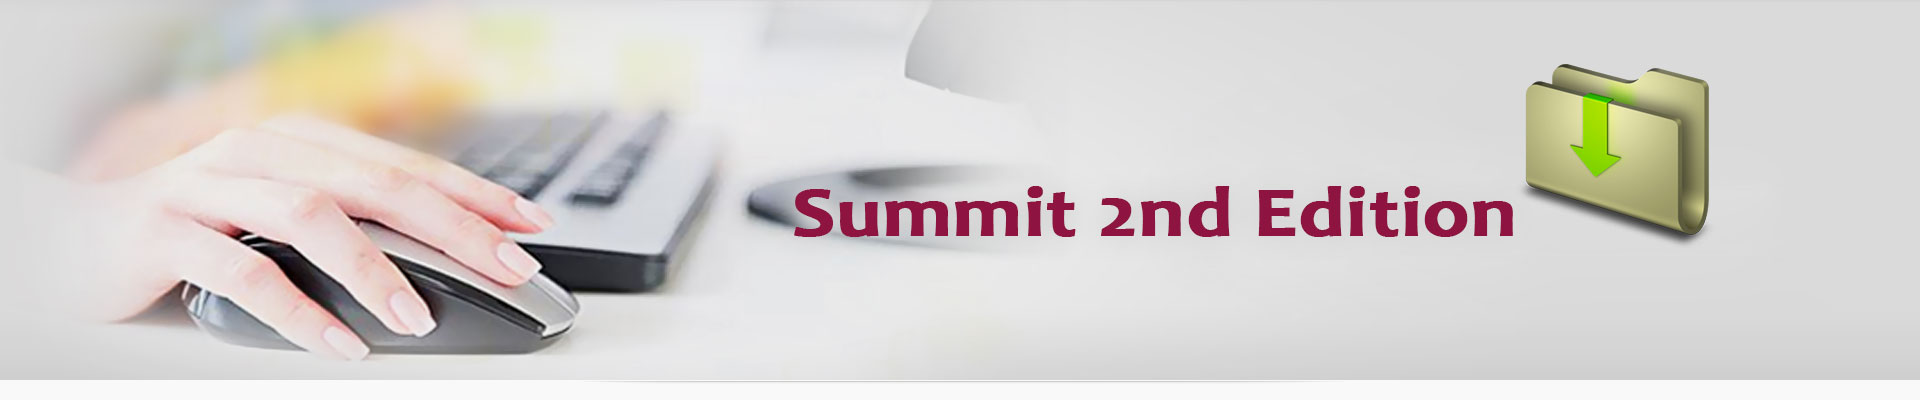 Summit 2nd Edition-Downloads